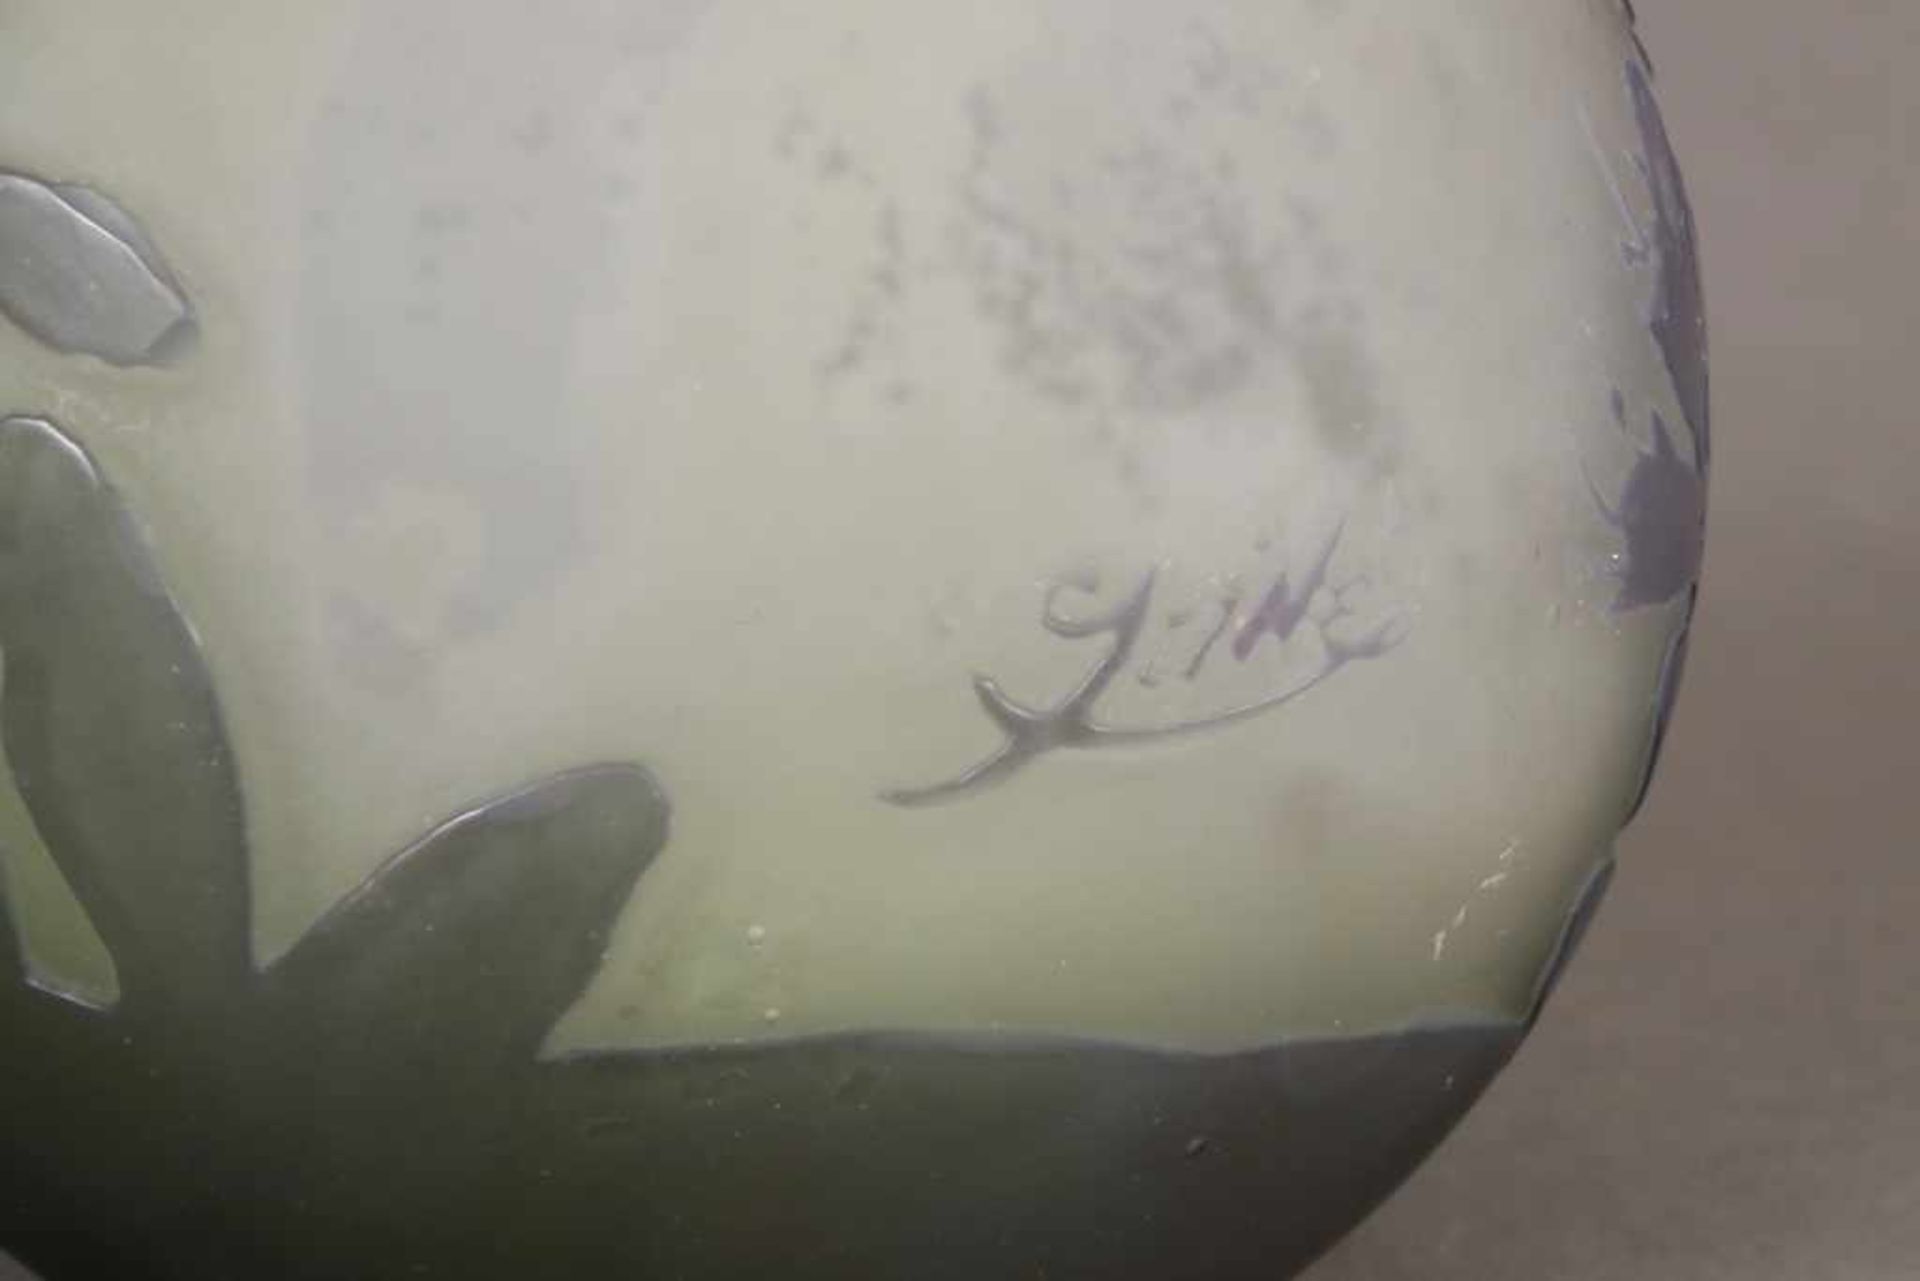 ÉMILE GALLÉ Ziervase grünes, violett überfangenes Glas, geschliffen und geätzt, bauchiger Korpus mit - Bild 3 aus 3